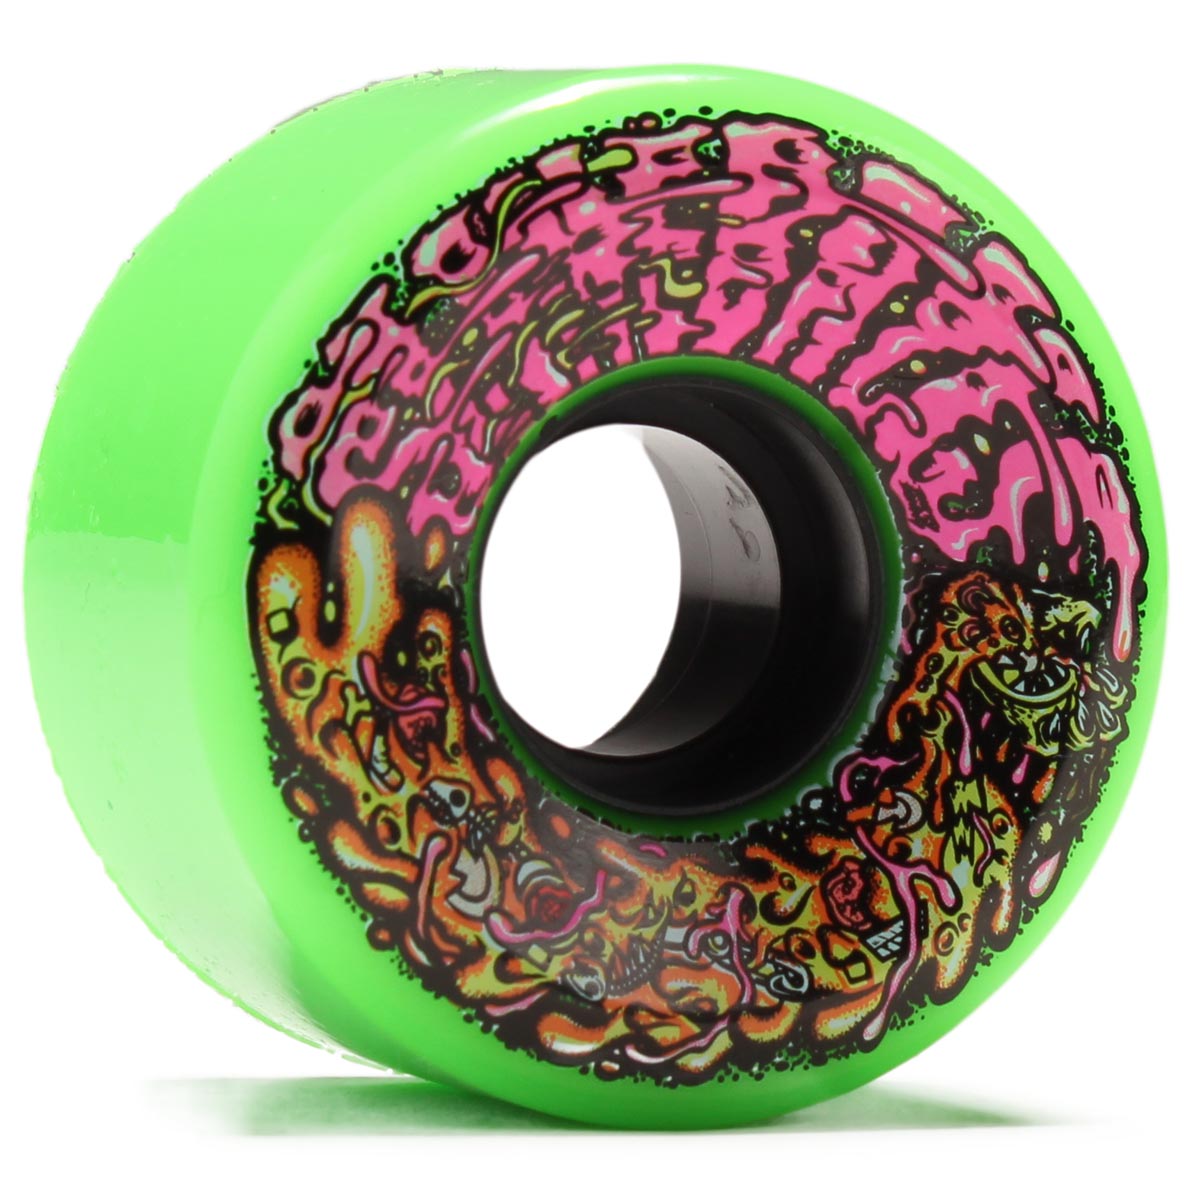 Slime Balls Dirty Donny Mini OG Slime 78a Skateboard Wheels - Green - 54.5mm image 1